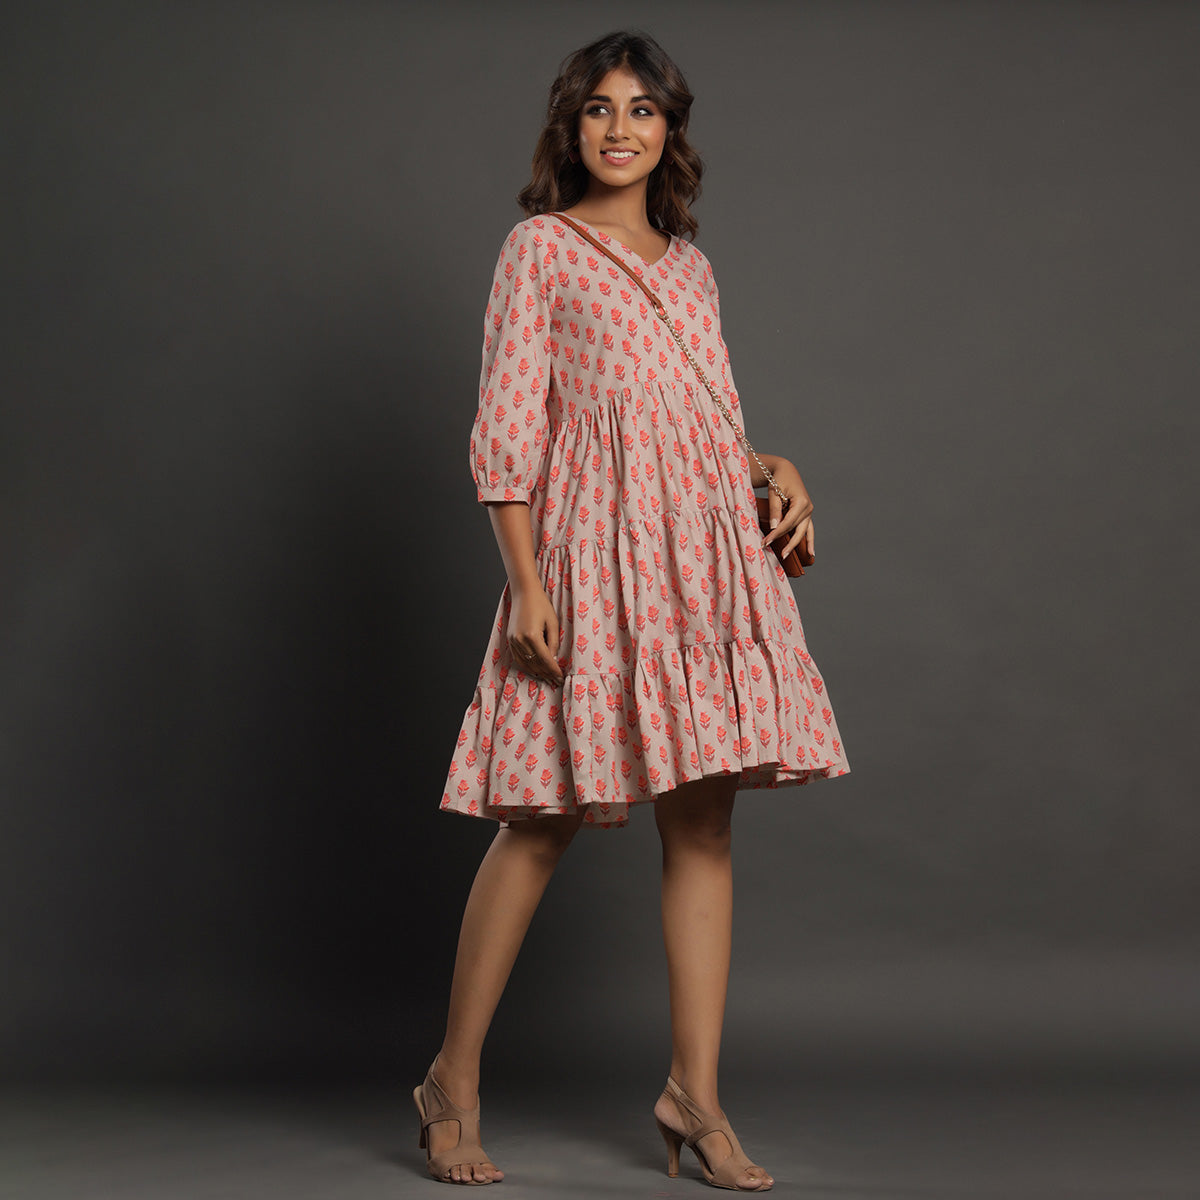 Pink Primrose on Grey Tier Dress Jisora Jaipur